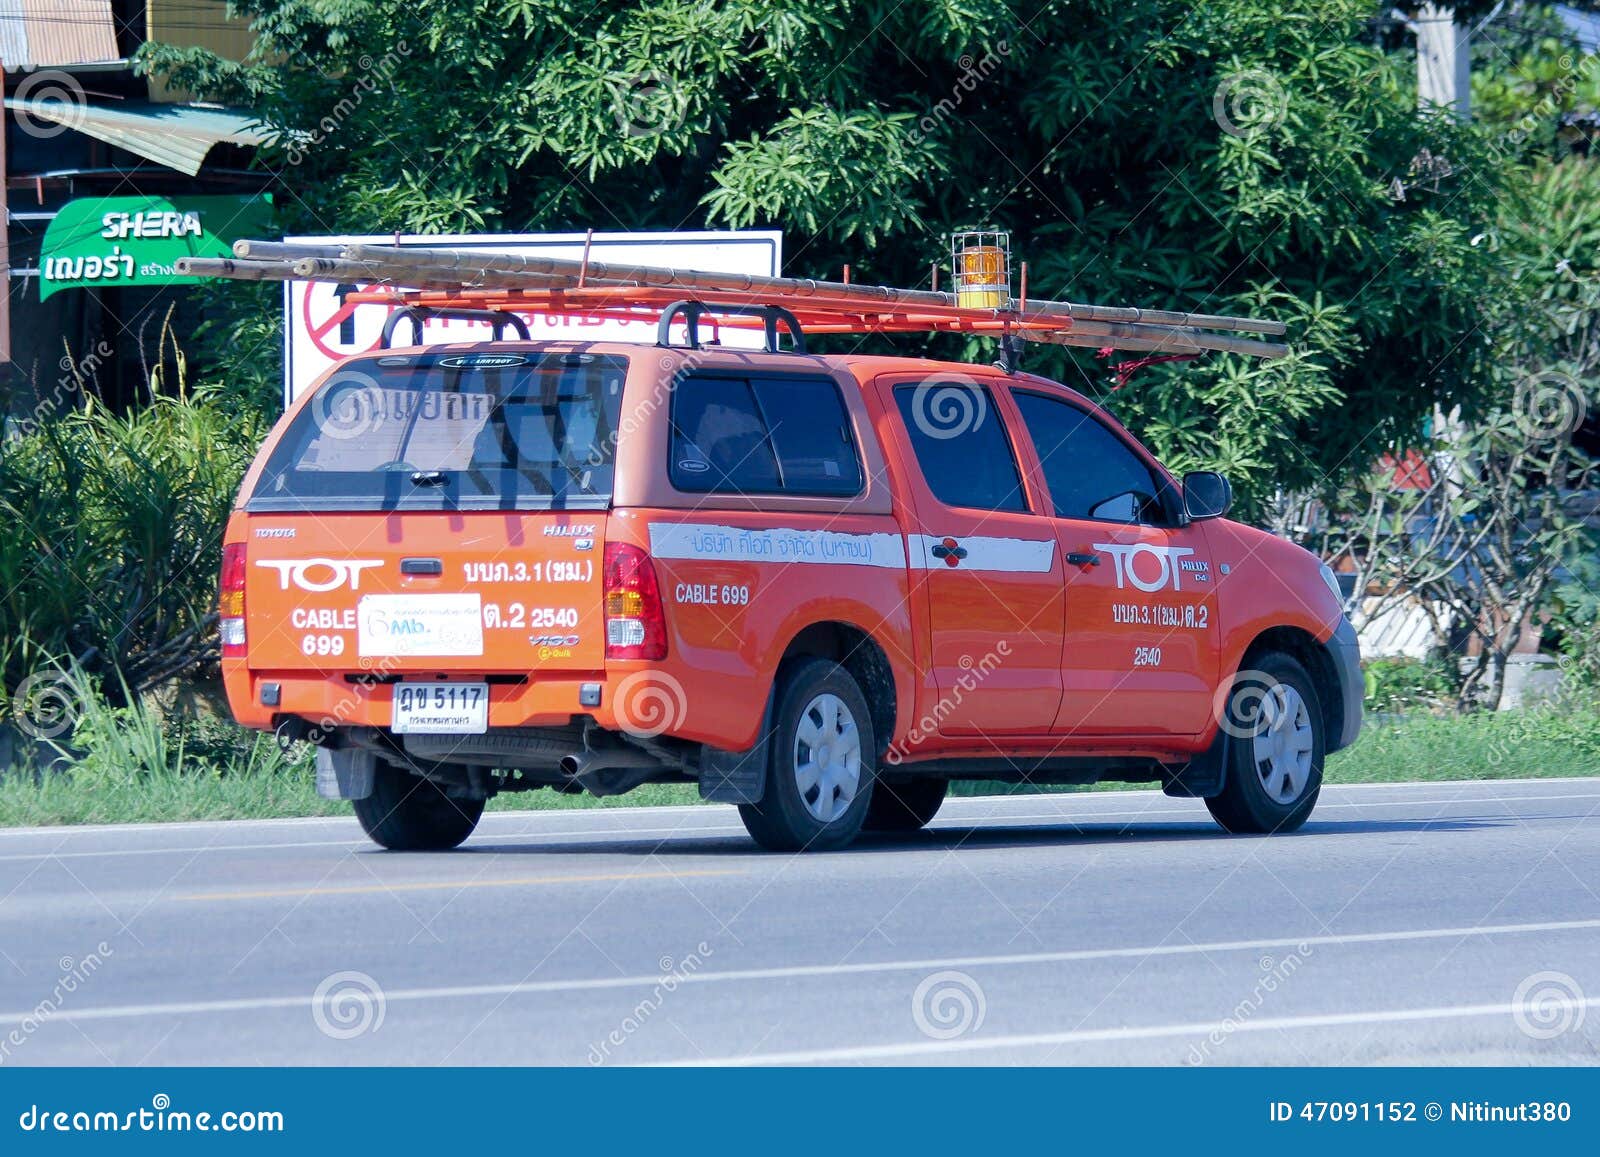 CHIANGMAI, THAÏLANDE - 13 OCTOBRE 2014 : Mini camion de société de doigt Intenet et service téléphonique en Thaïlande Photo à la route No. 121 à environ 8 kilomètres de Chiangmai du centre, Thaïlande